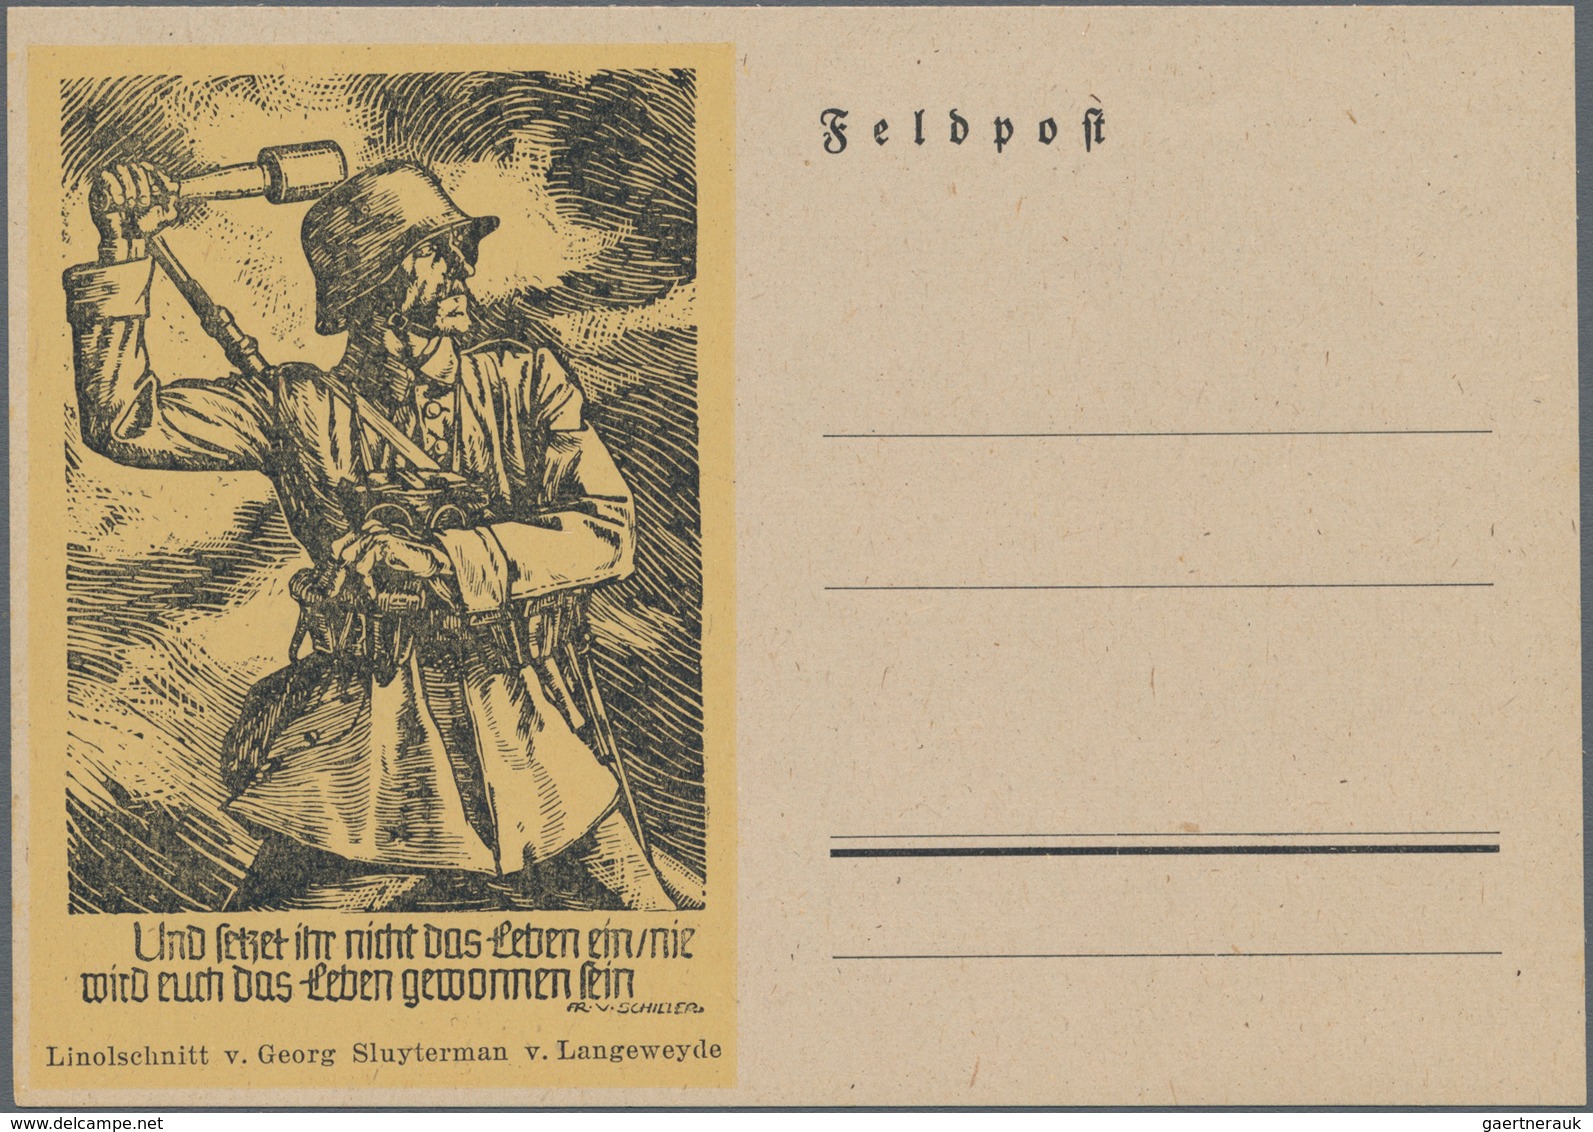 Feldpost 2. Weltkrieg: 1938/45, 9 Künstlerkarten Feldpost WWII. von Georg Sluyterman v. Langeweyde,